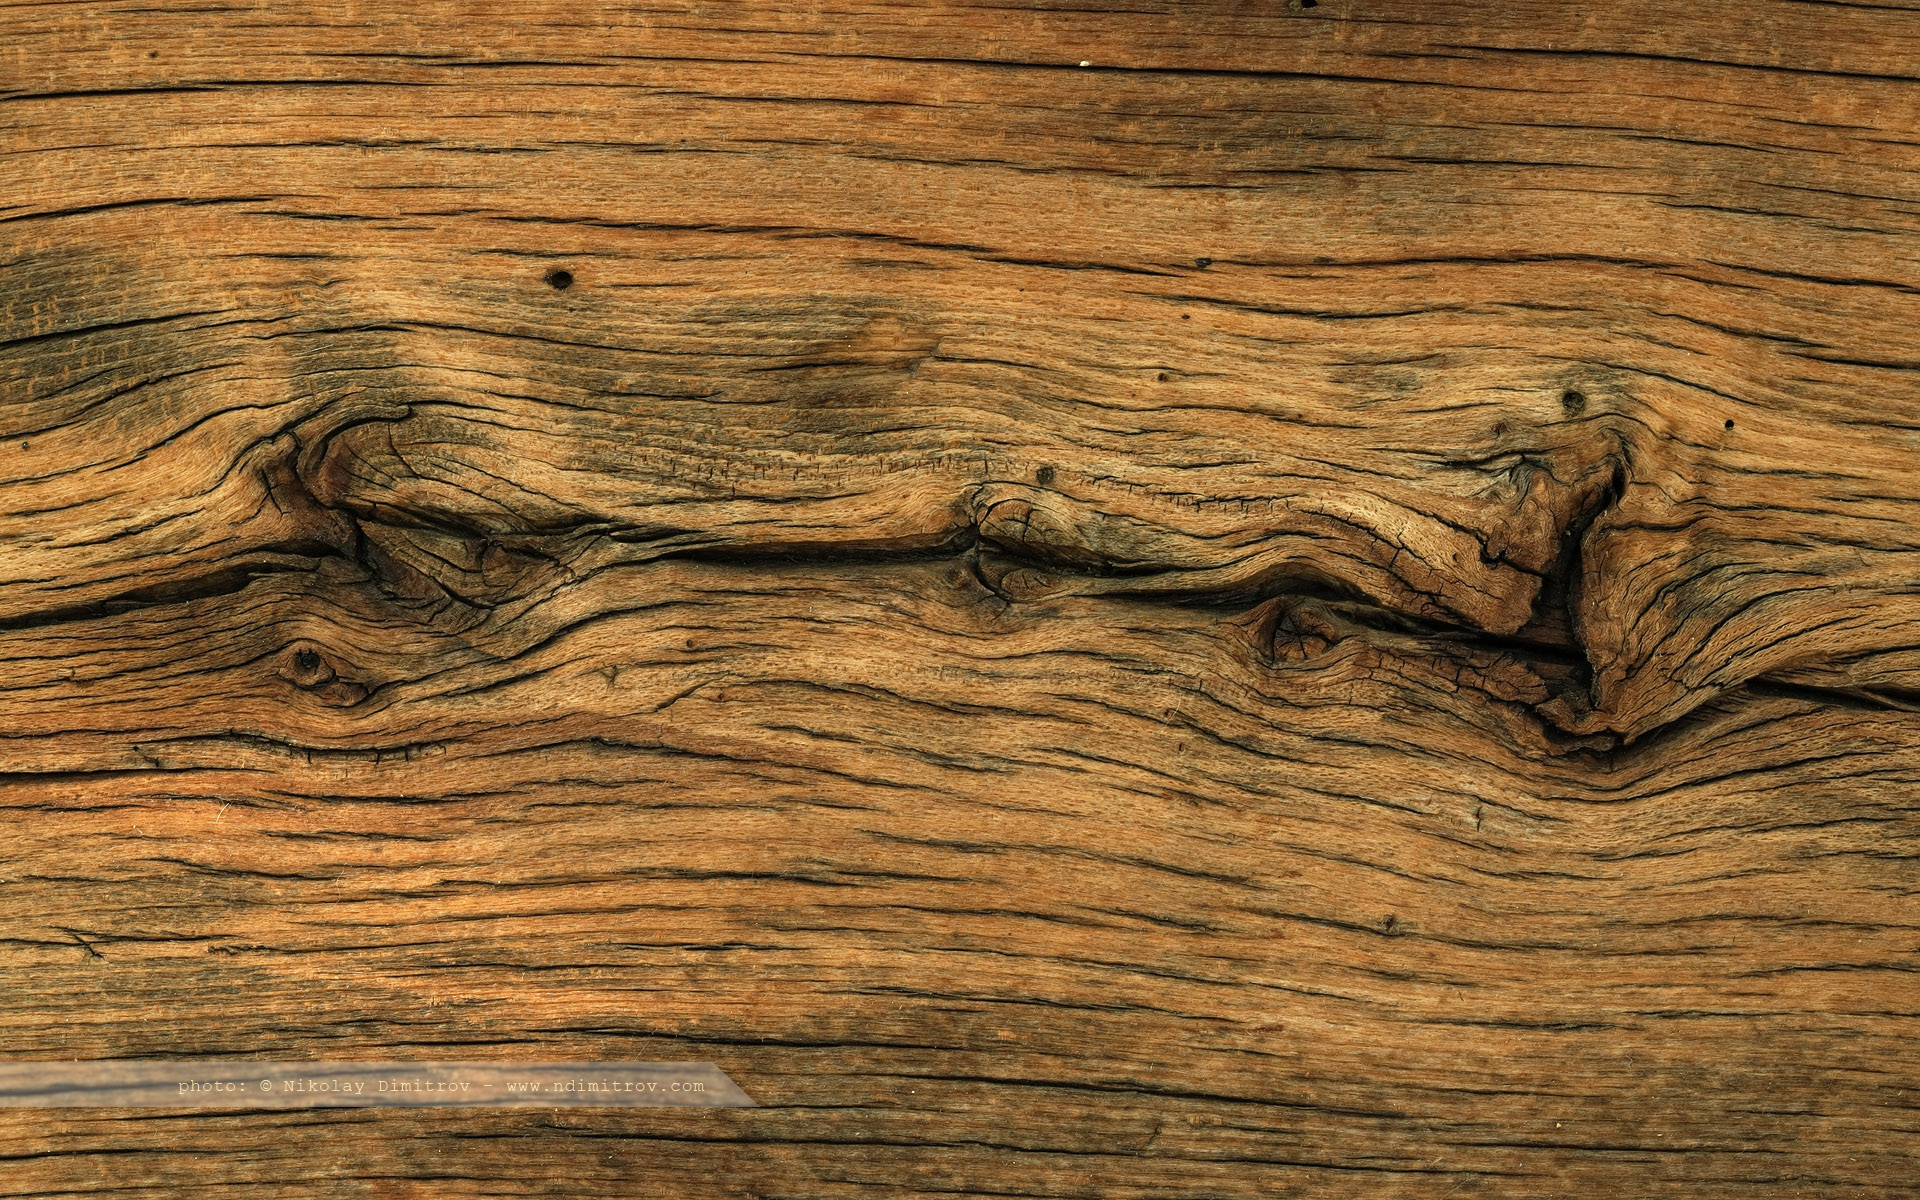 holz wallpaper,wood,brown,wood flooring,wood stain,hardwood